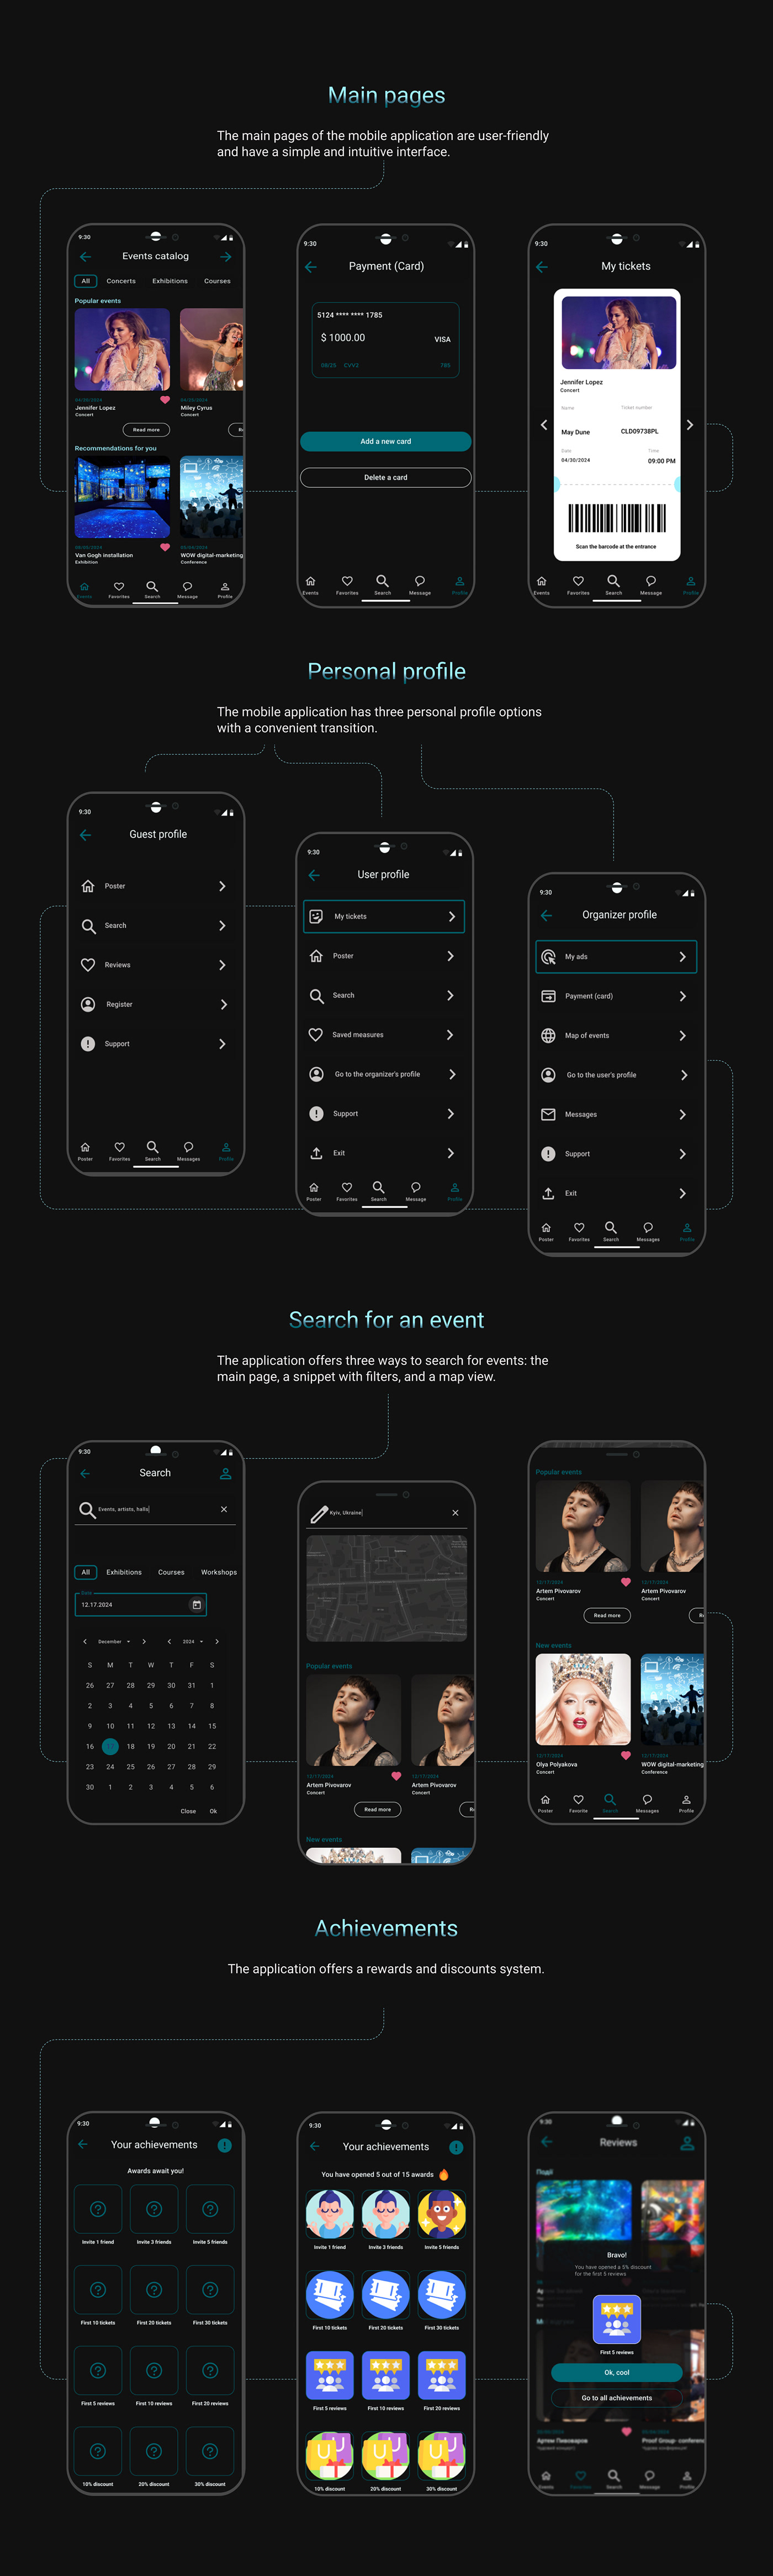 UX design UI UX design Mobile app Case Study app design UI/UX ui design ux/ui user interface UI disign